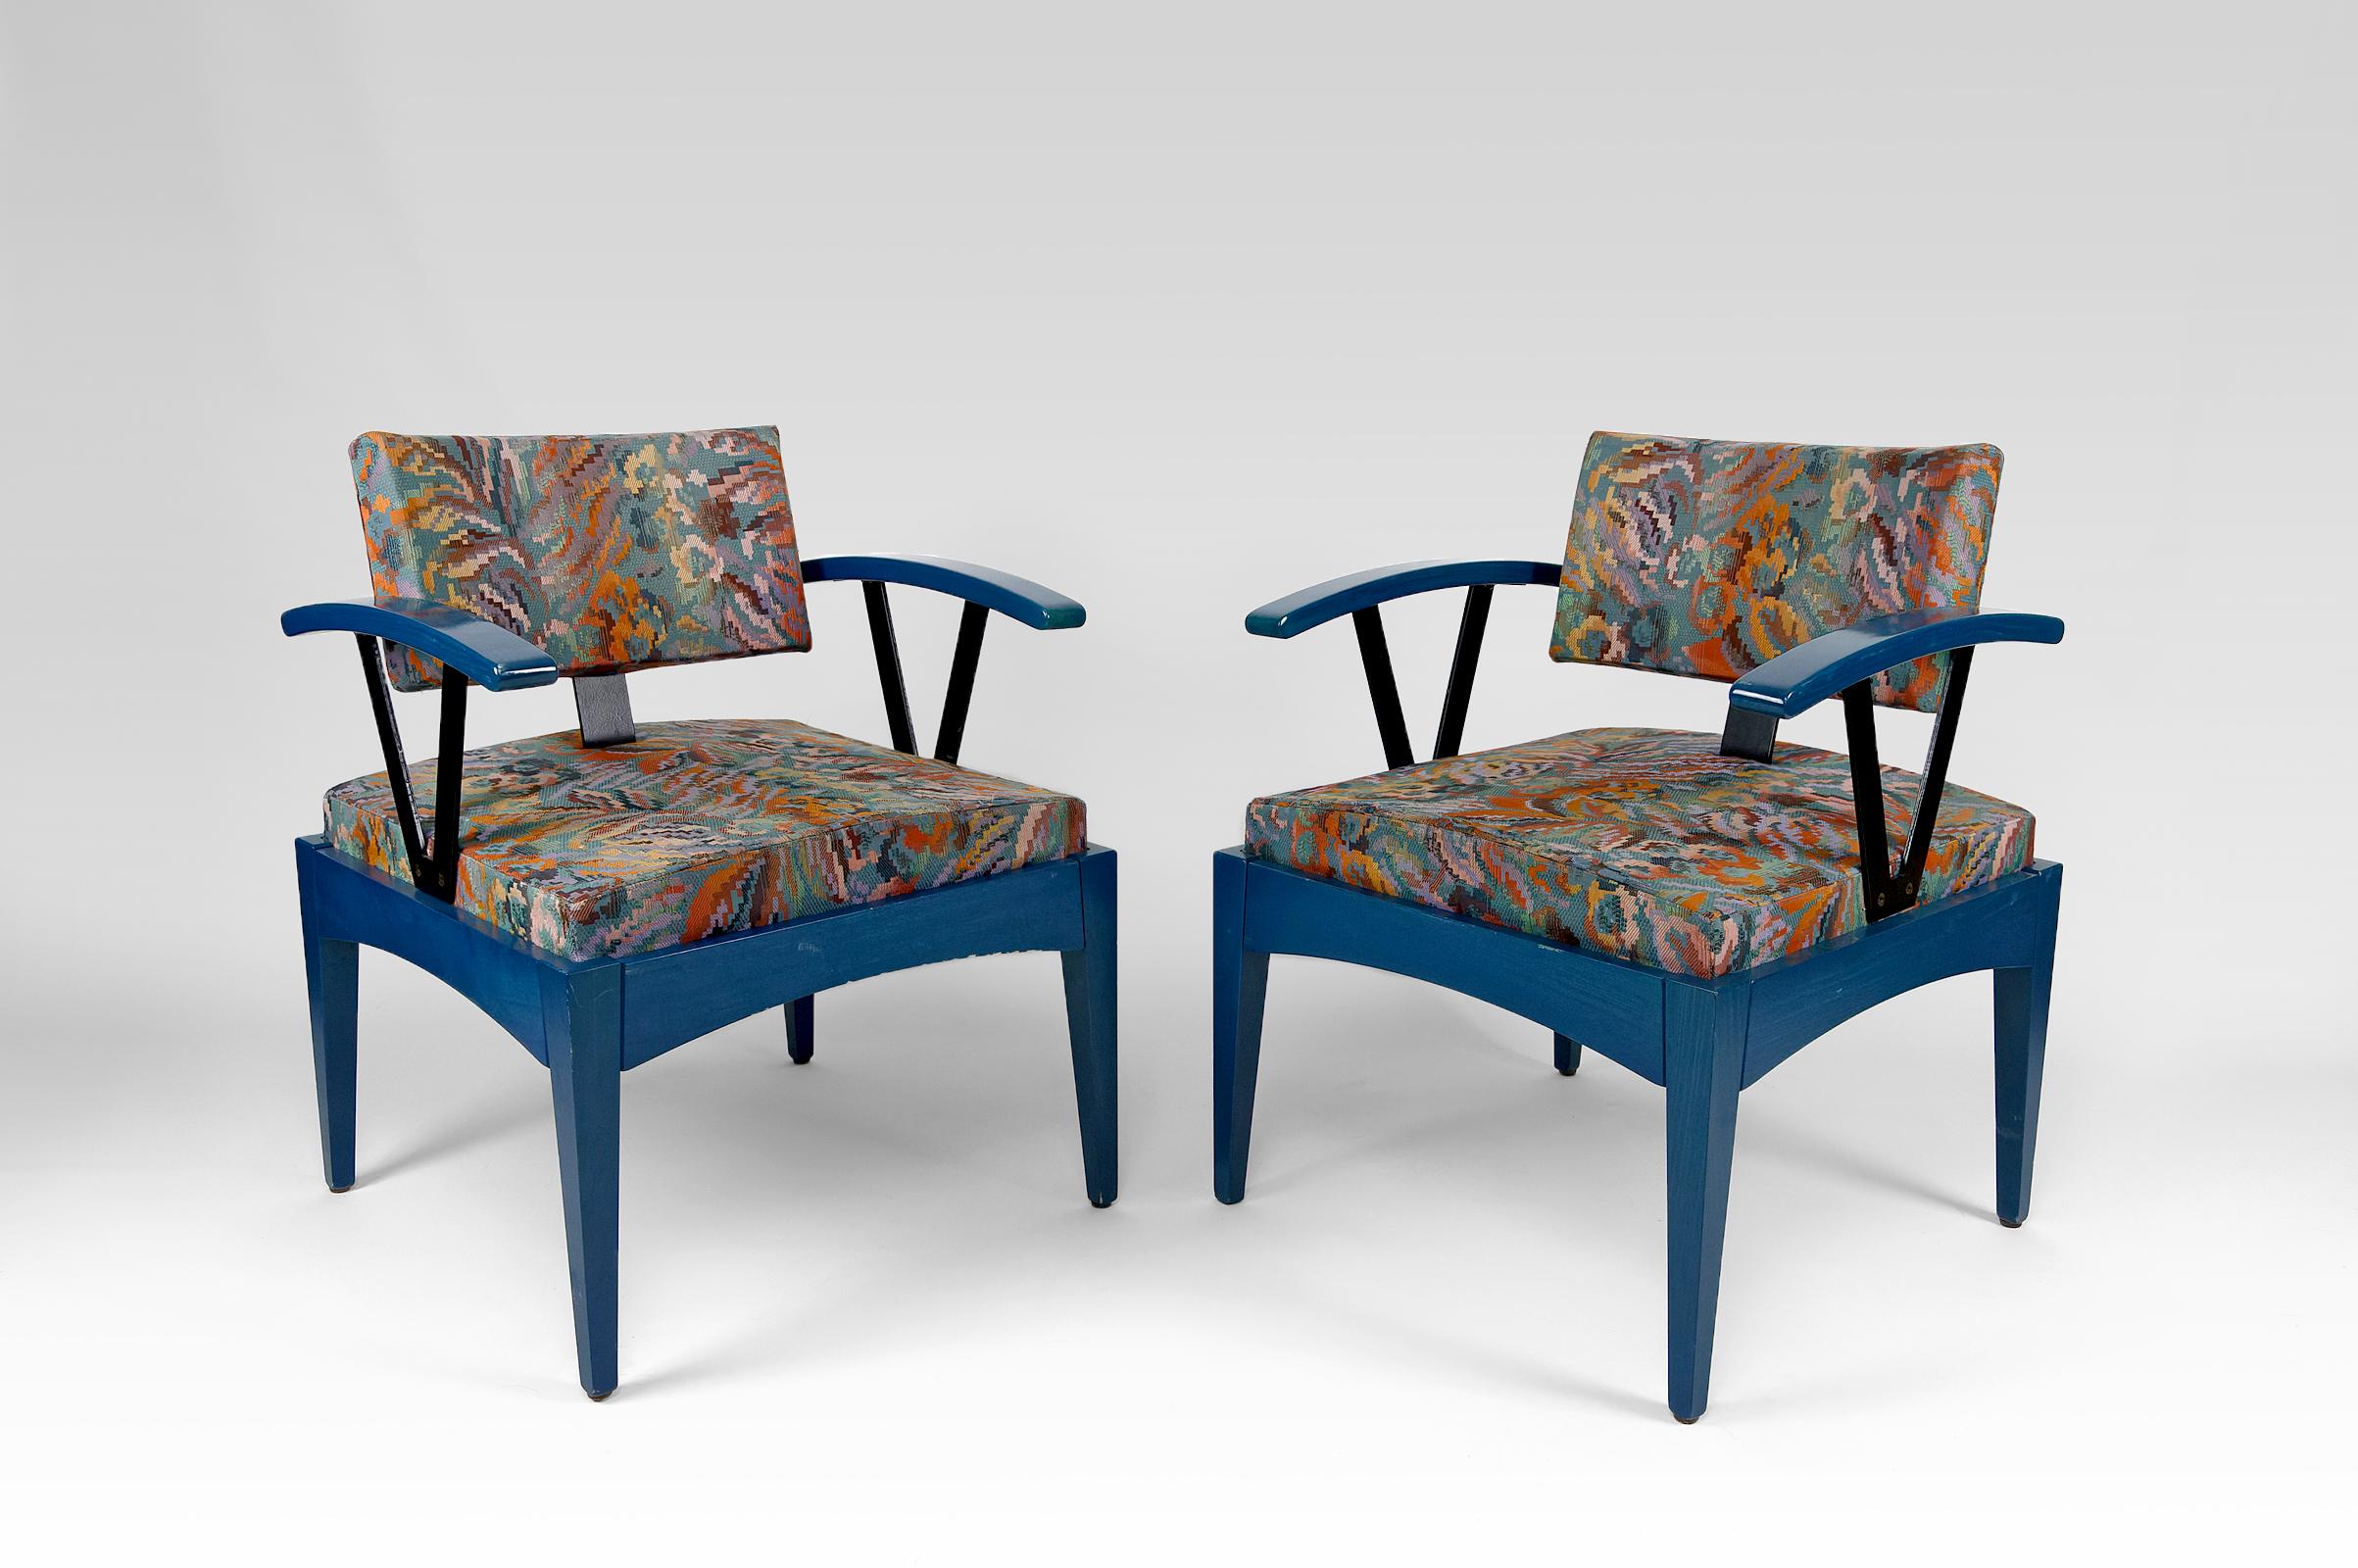 Seltenes Paar Designer-Sessel von Baumann.
Das Label des Herstellers ist vorhanden.
Frankreich, ca. 1970-1980
In gutem Zustand.

Abmessungen:
Höhe 79 cm
Sitzhöhe 45 cm
Breite 62 cm
Tiefe 62 cm